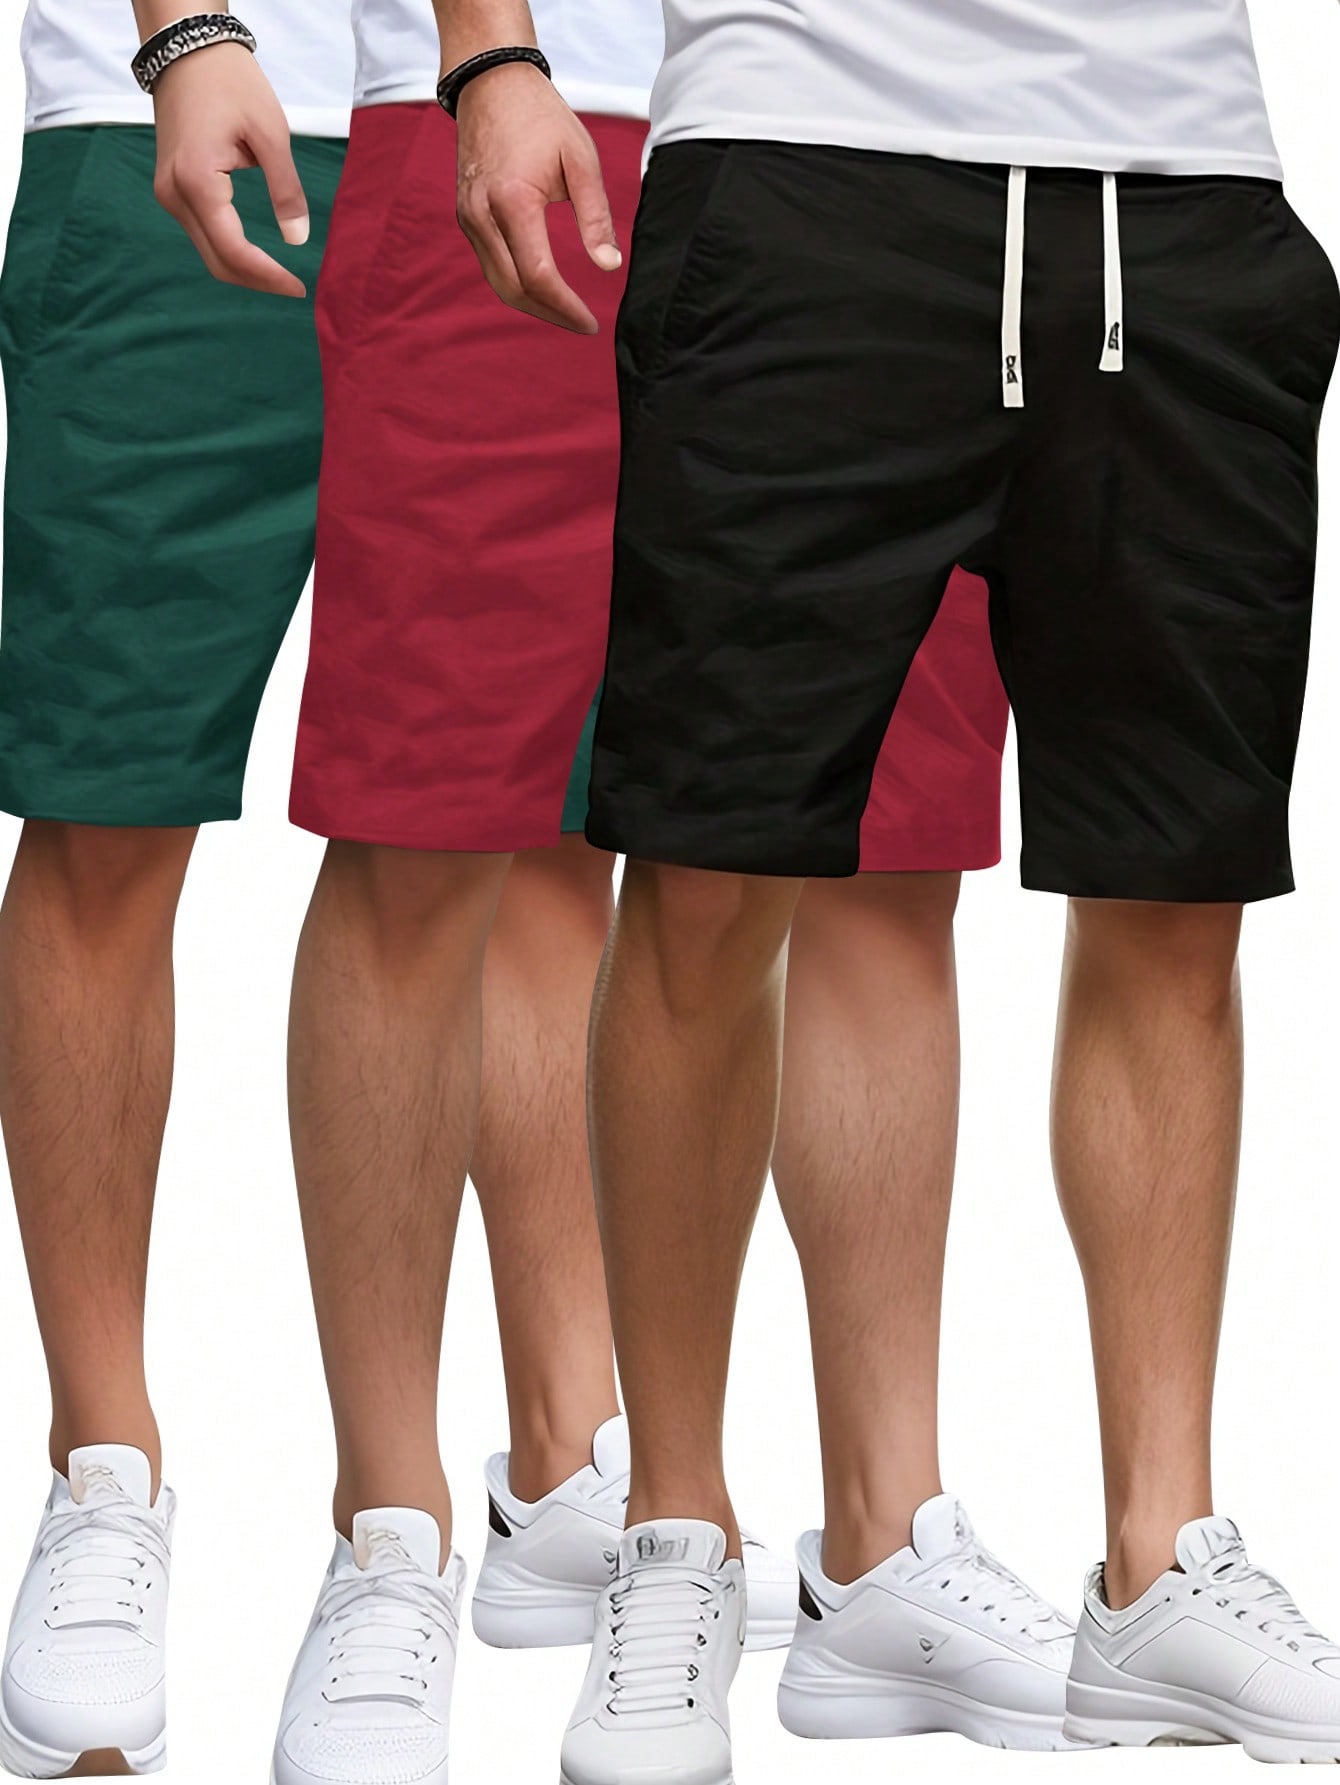 3 шт./компл. летние мужские однотонные шорты с эластичной резинкой на талии, многоцветный фото